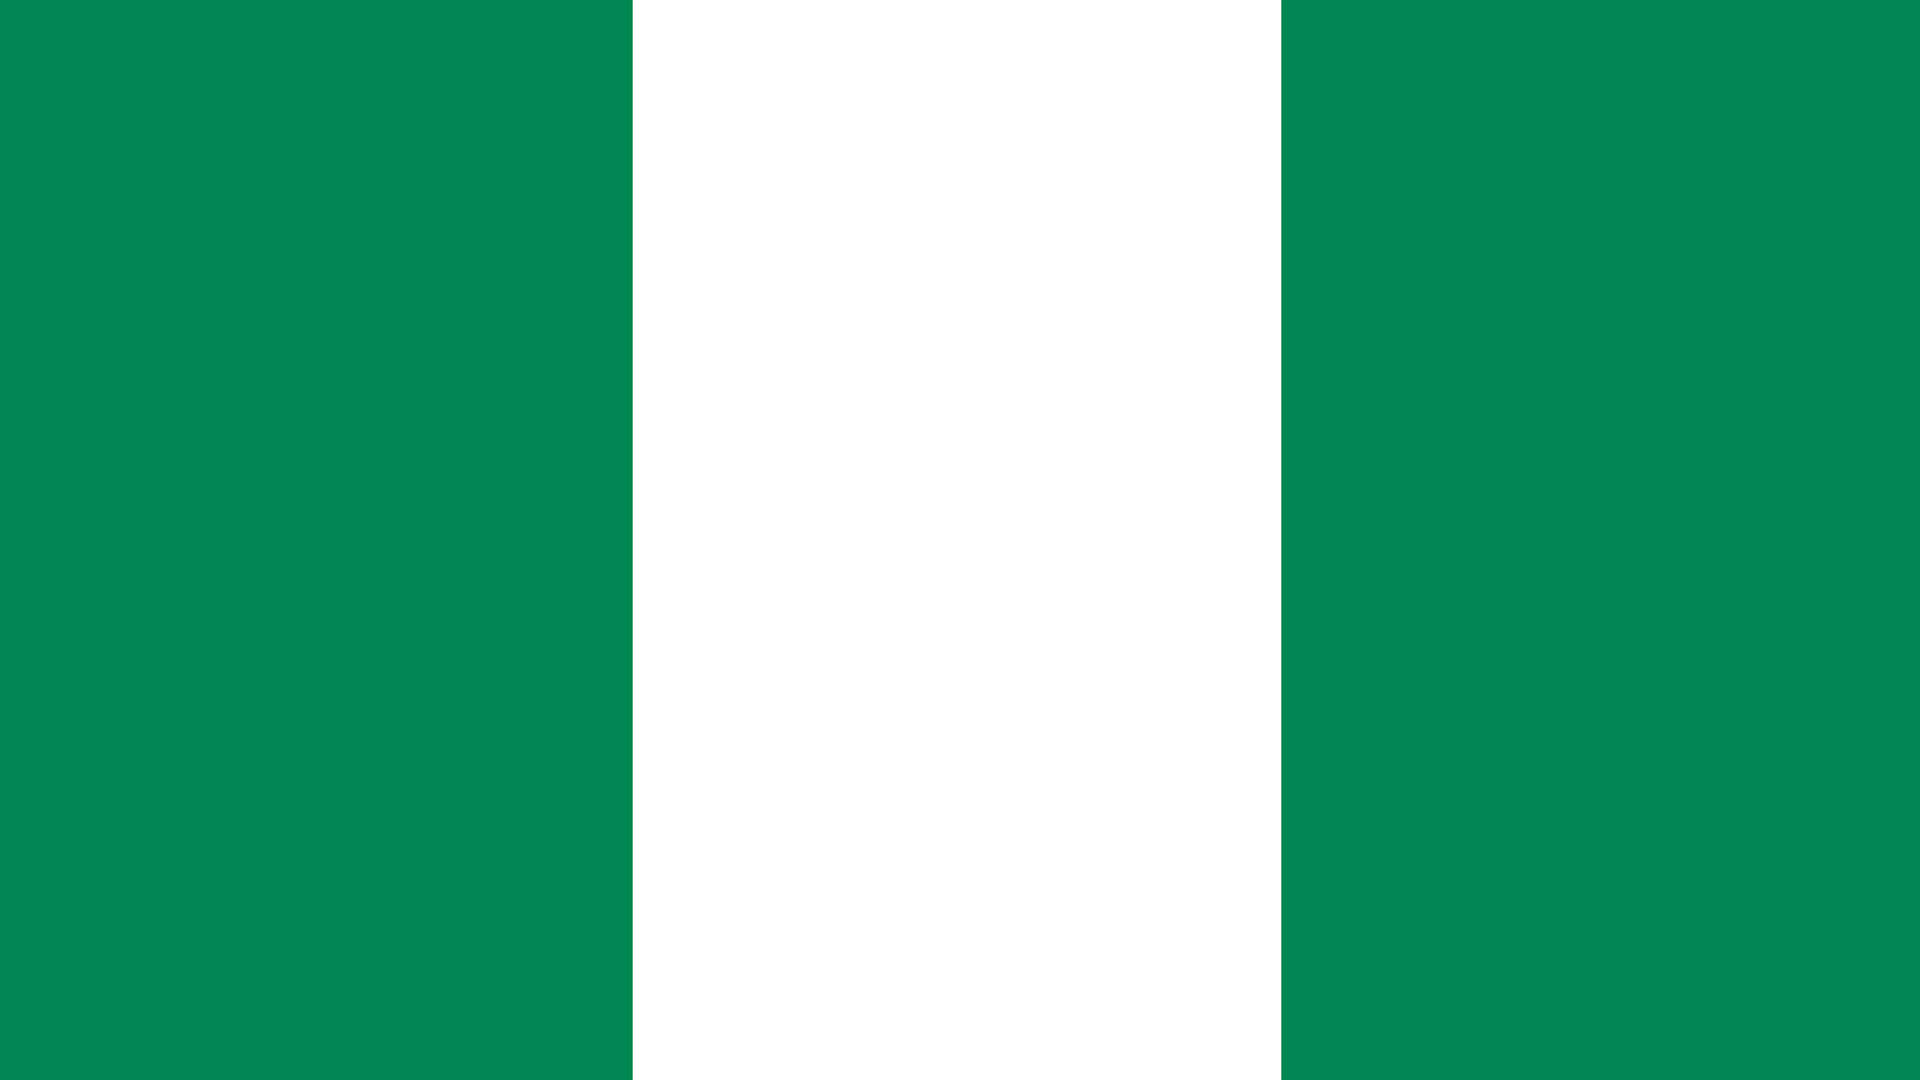 Nigeria Minimalist Digital Flag Illustration Background